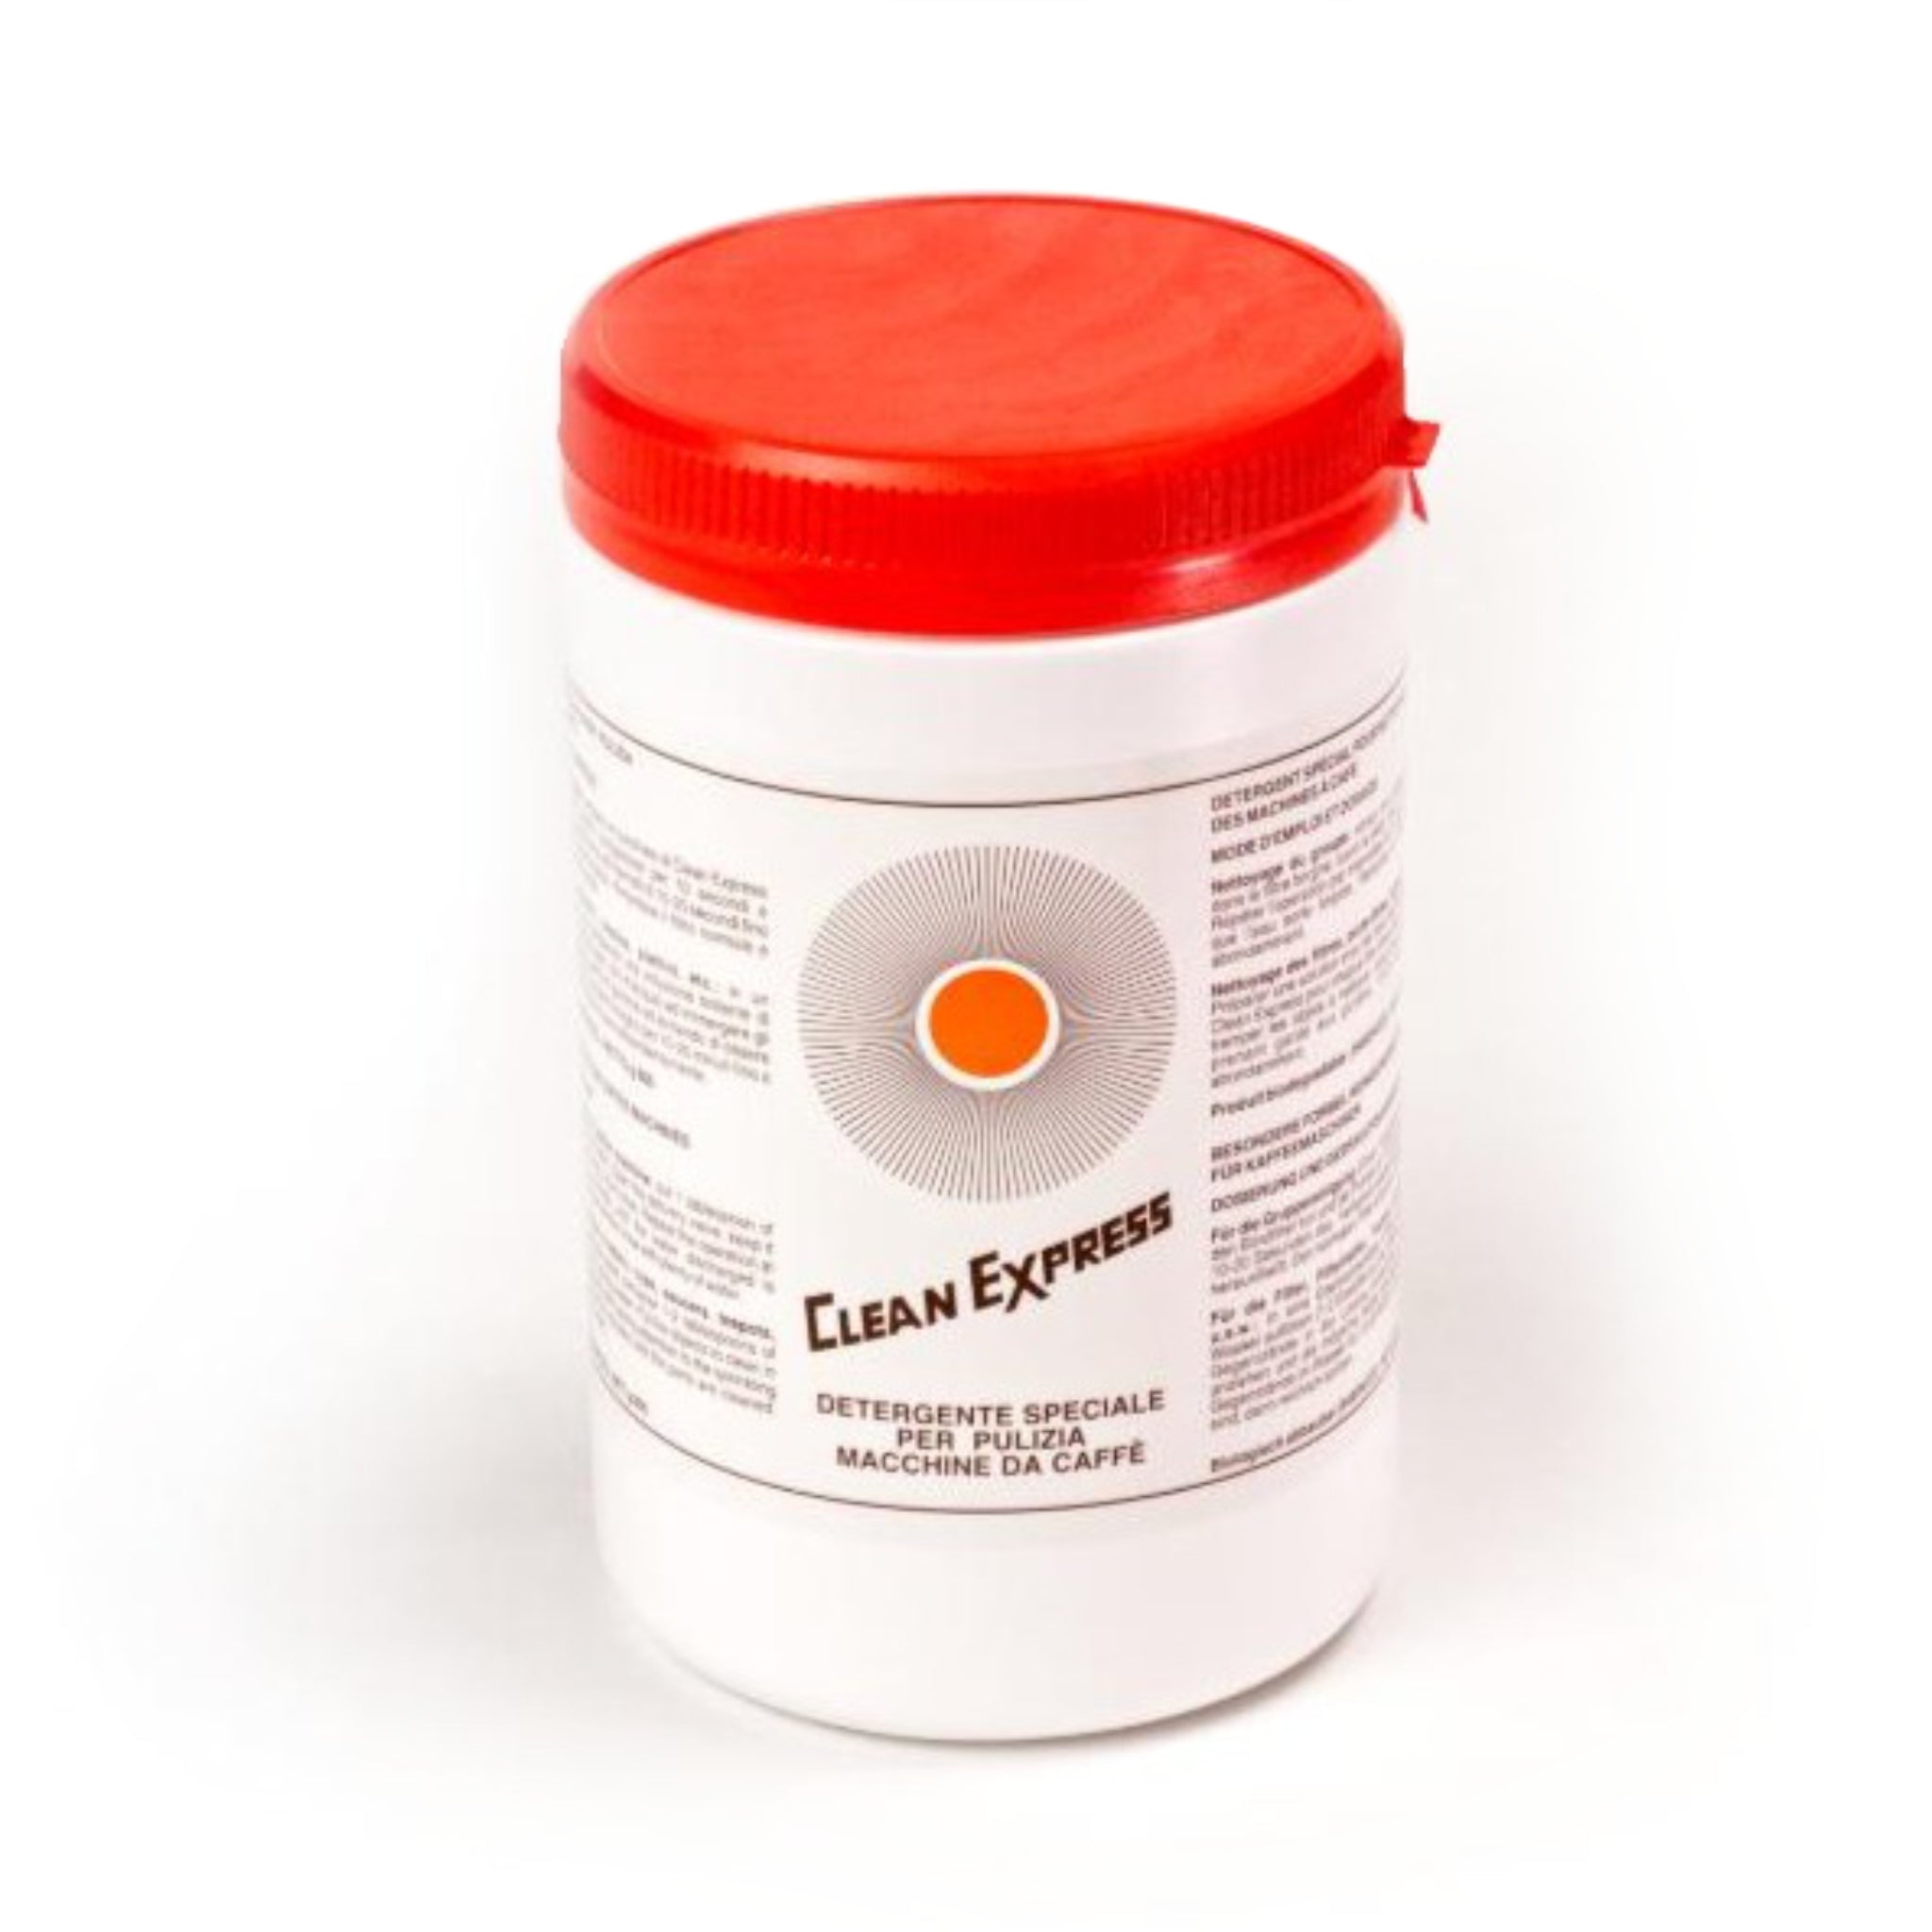 Produktbild Clean Express Reinigungsmittel für Siebtraeger-Kaffeemaschinen. Runde, weiße Verpackung mit schwarzer Schrift und rotem Deckel.